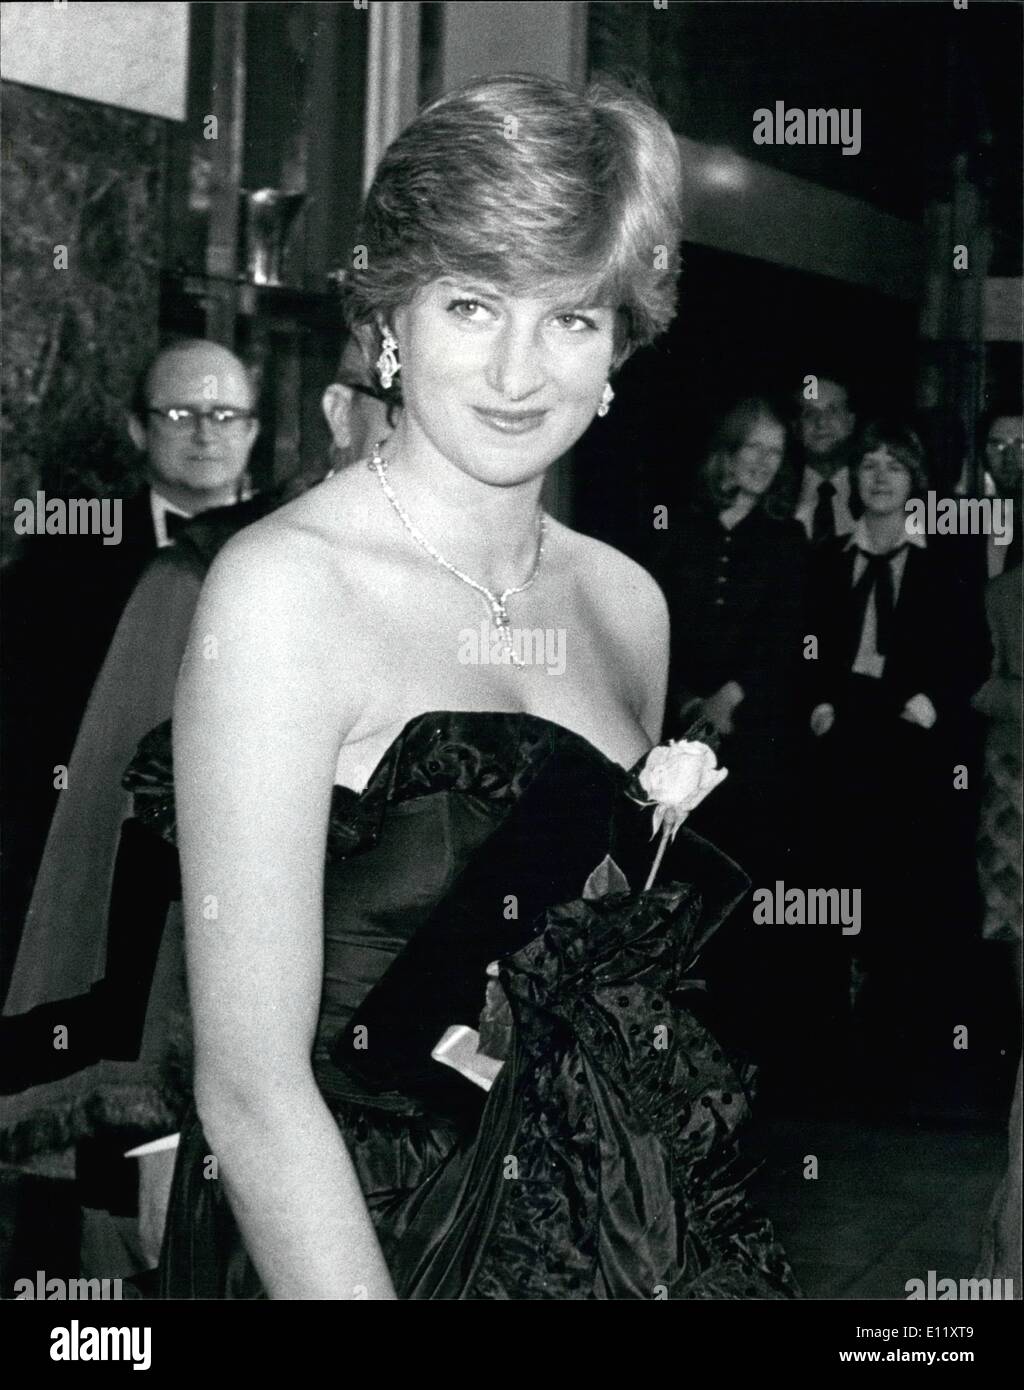 Mar. 03, 1981 - Lady Diana's premier engagement officiel : Lady Diana Spencer effectué son premier engagement officiel hier soir Banque D'Images